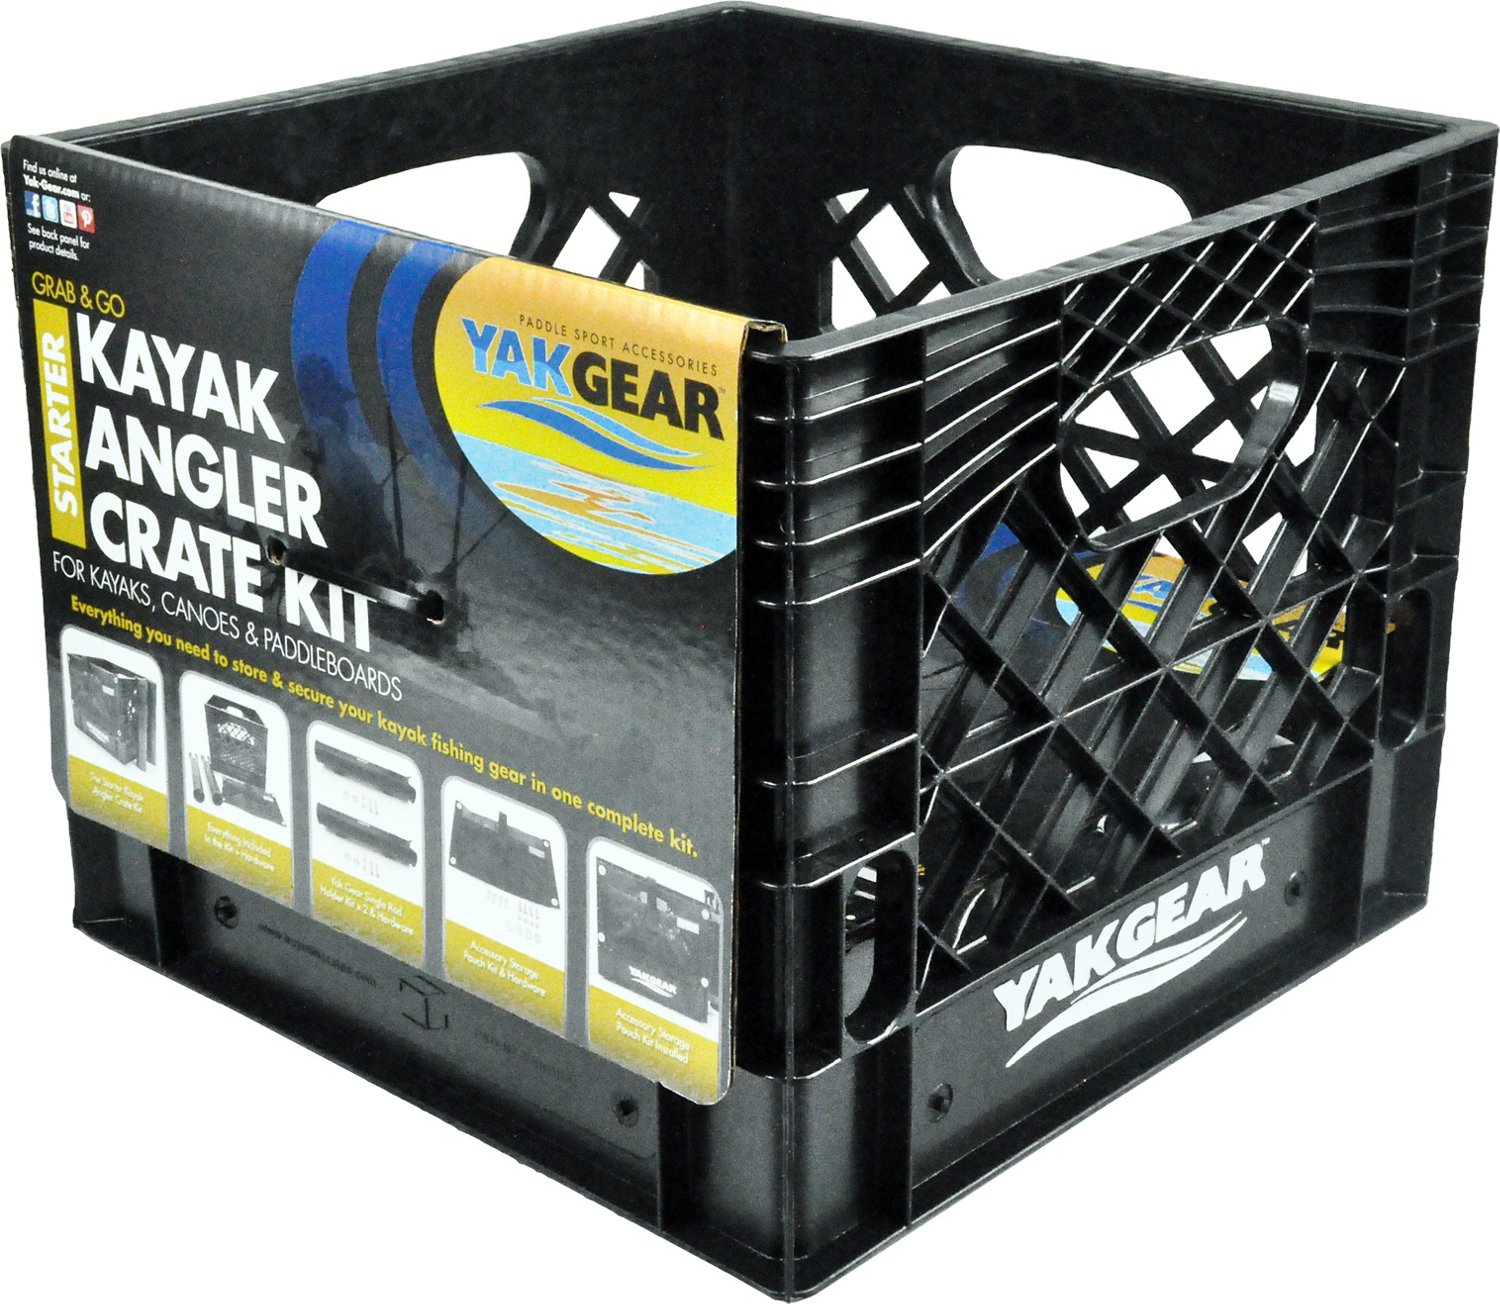 Yak-Gear™ Grab-and-Go Kayak Angler Starter Kit